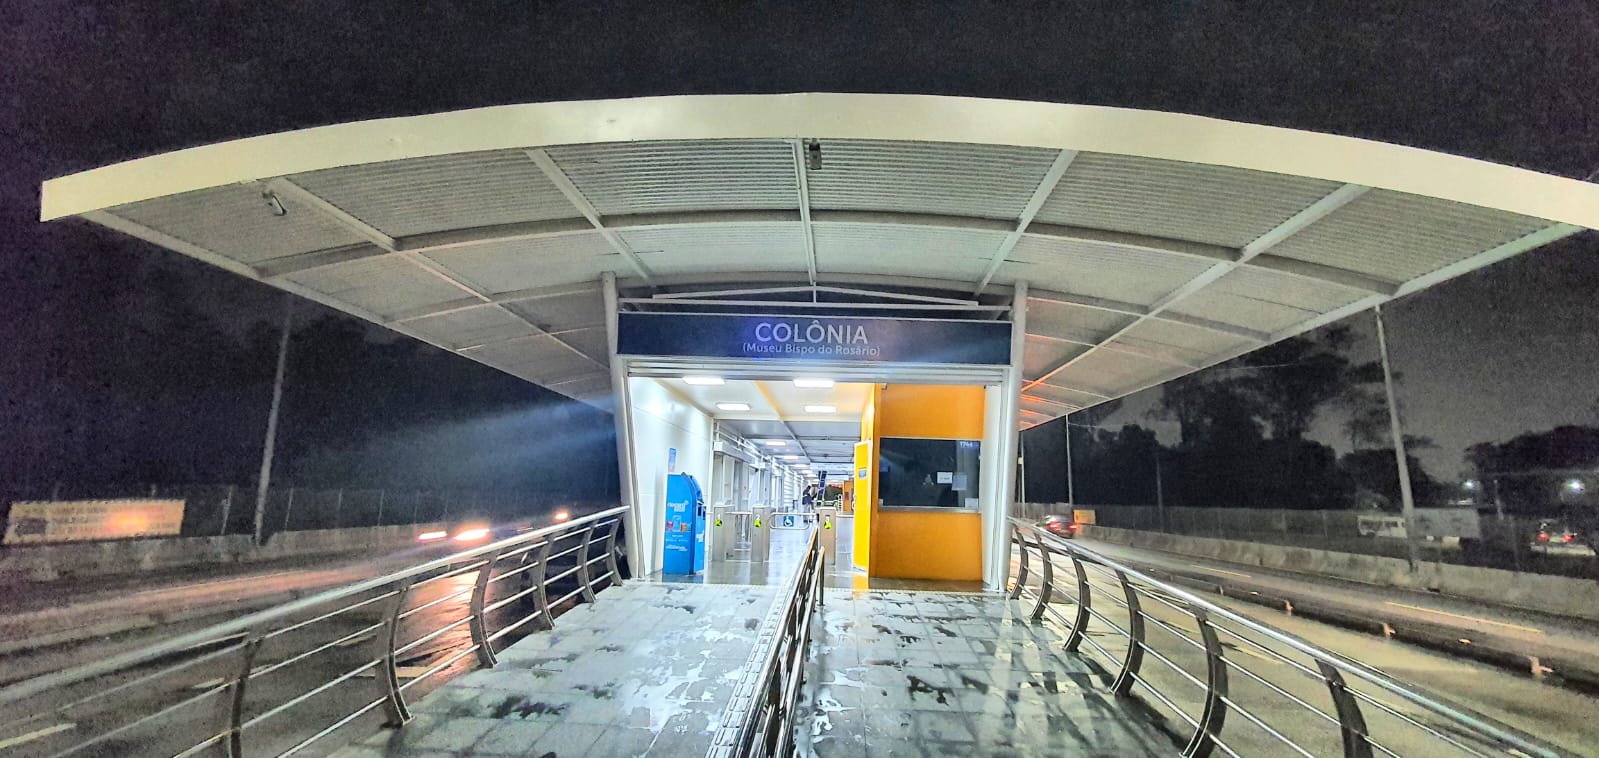 Estação Colônia BRT